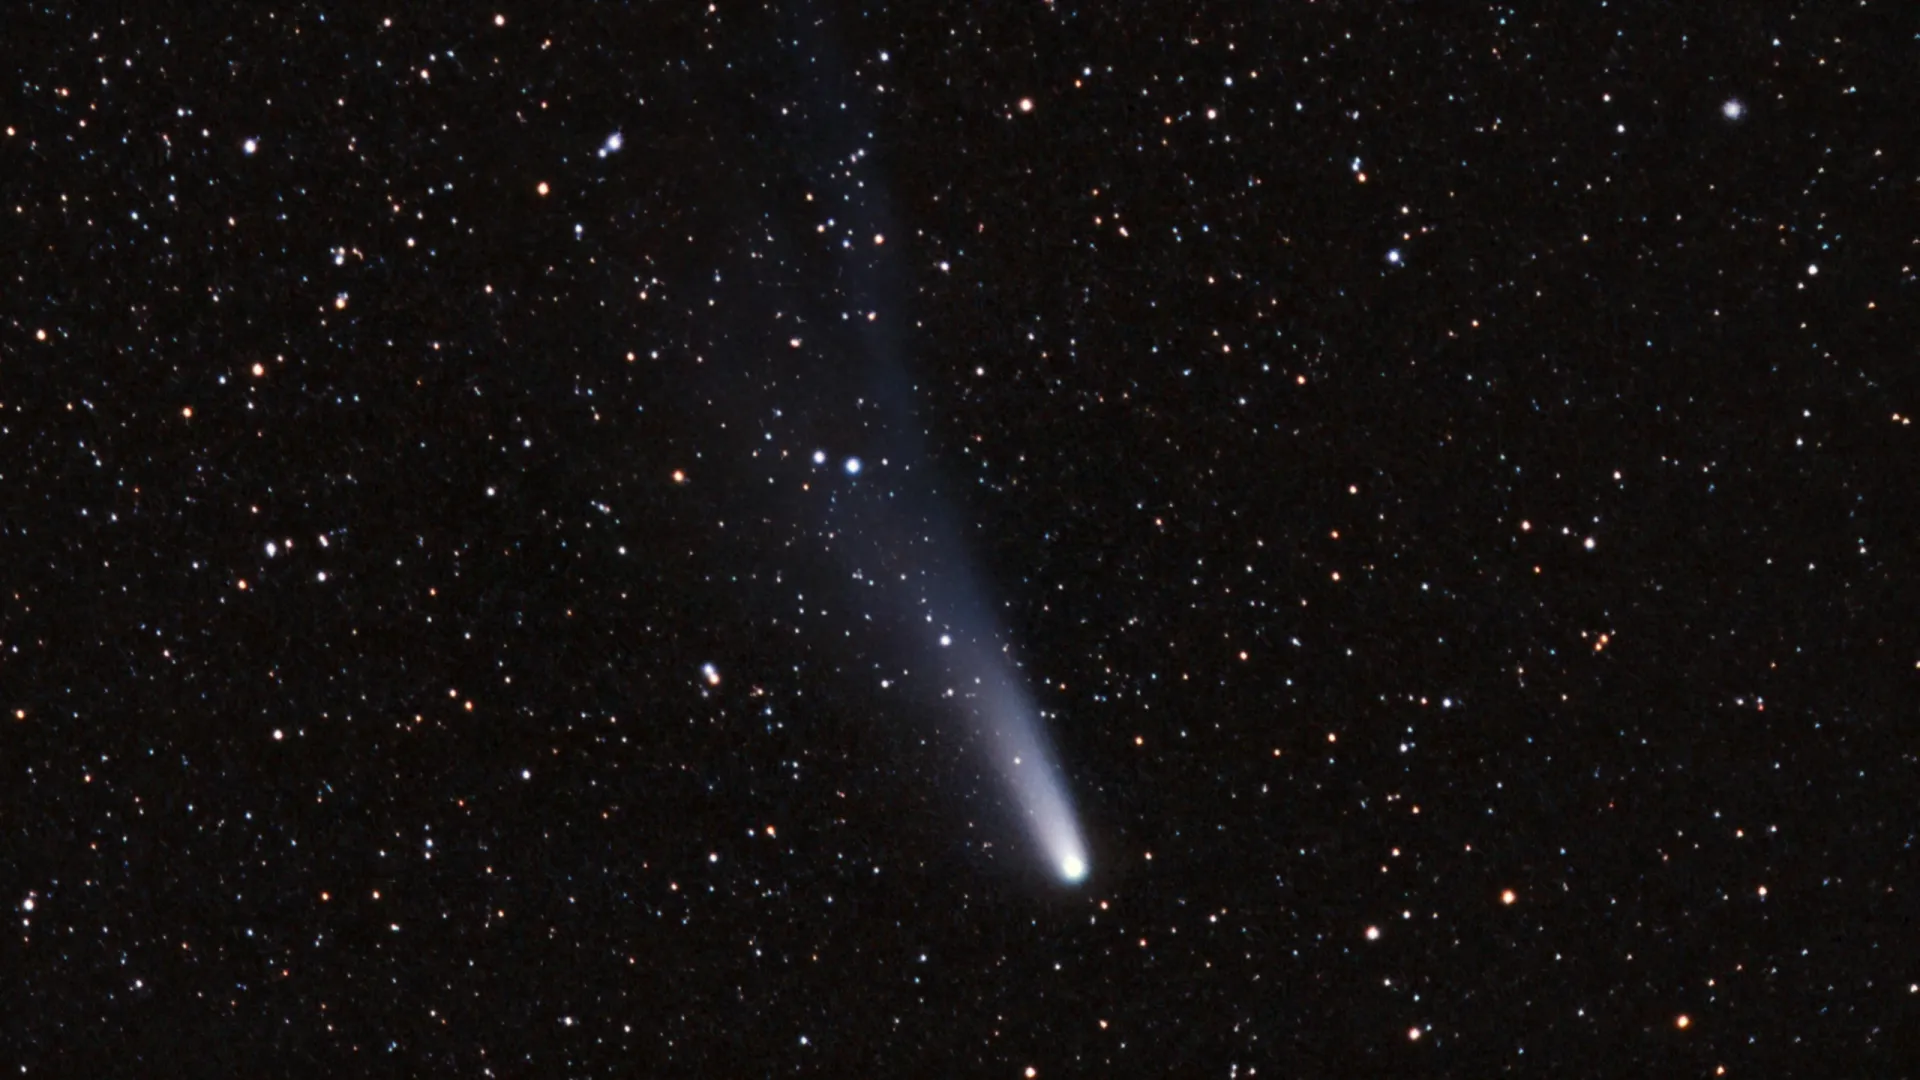 Комета Галлея, сфотографированная во время ее последнего появления в 1986 году. Любительский снимок, сделанный с помощью зеркального фотоаппарата. Фото: Brian Donovan / Shutterstock / Fotodom